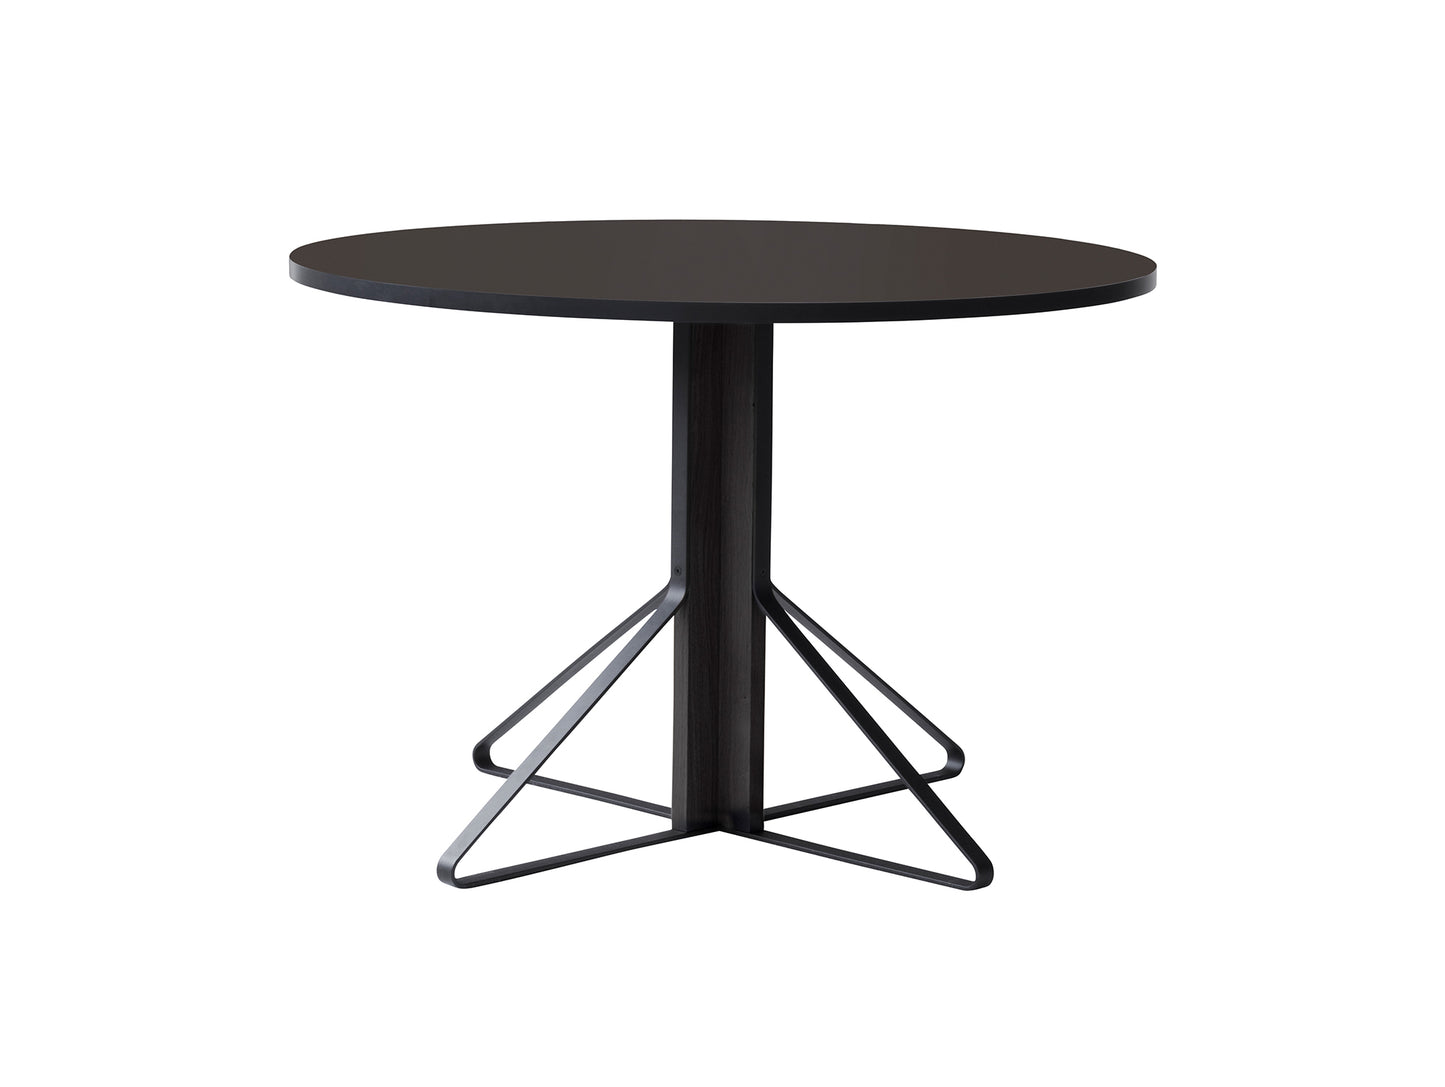 Kaari Table Round by Artek - Tabletop Diameter: 110 cm (REB 004) / Linoleum Black Tabletop / Black Lacquered Oak Base